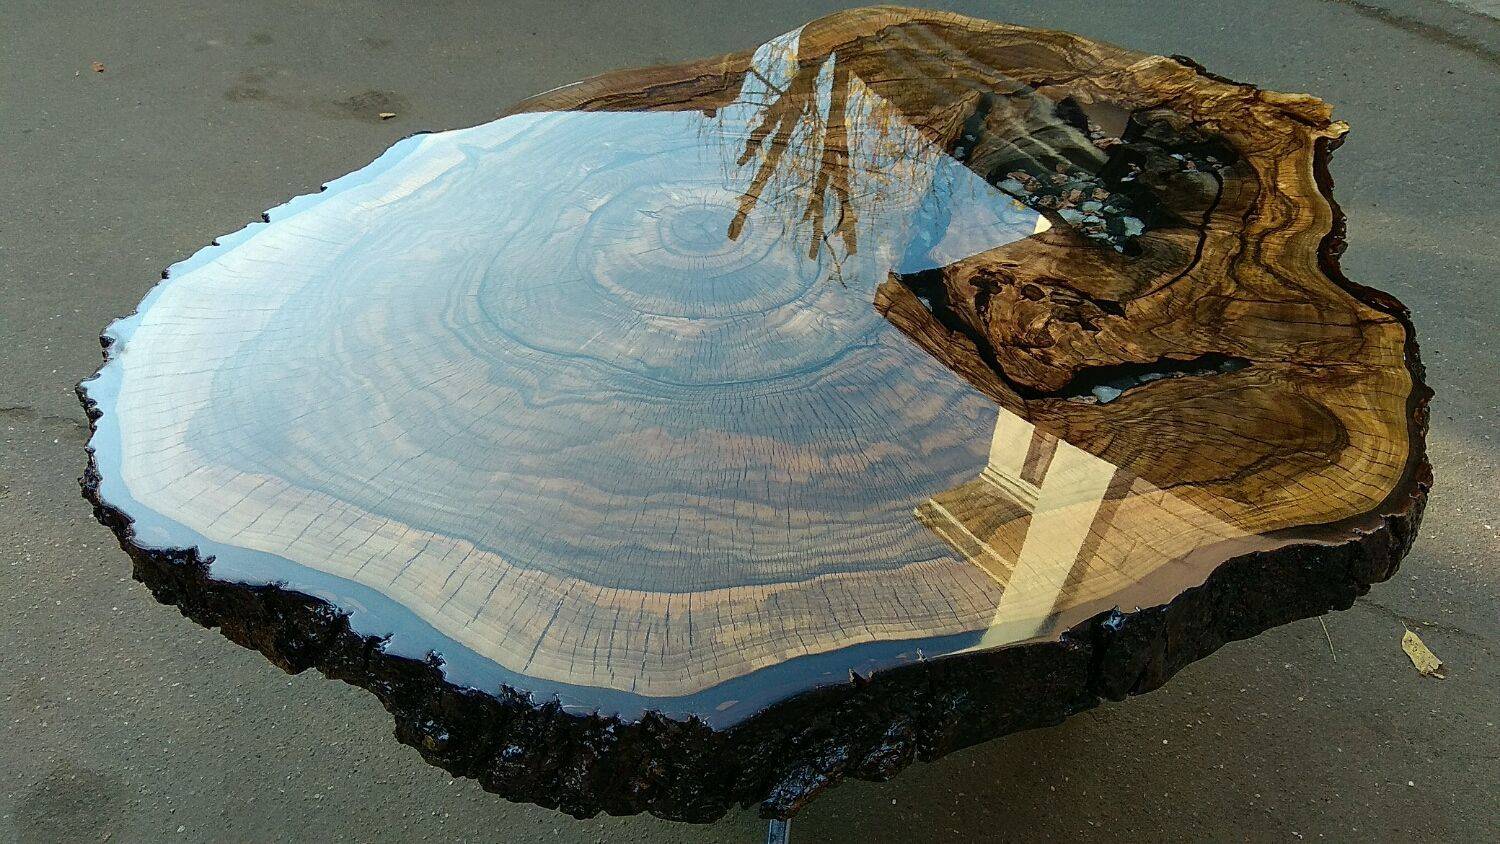 Деревянный стол - стильные и практичные варианты для украшения (125 фото)